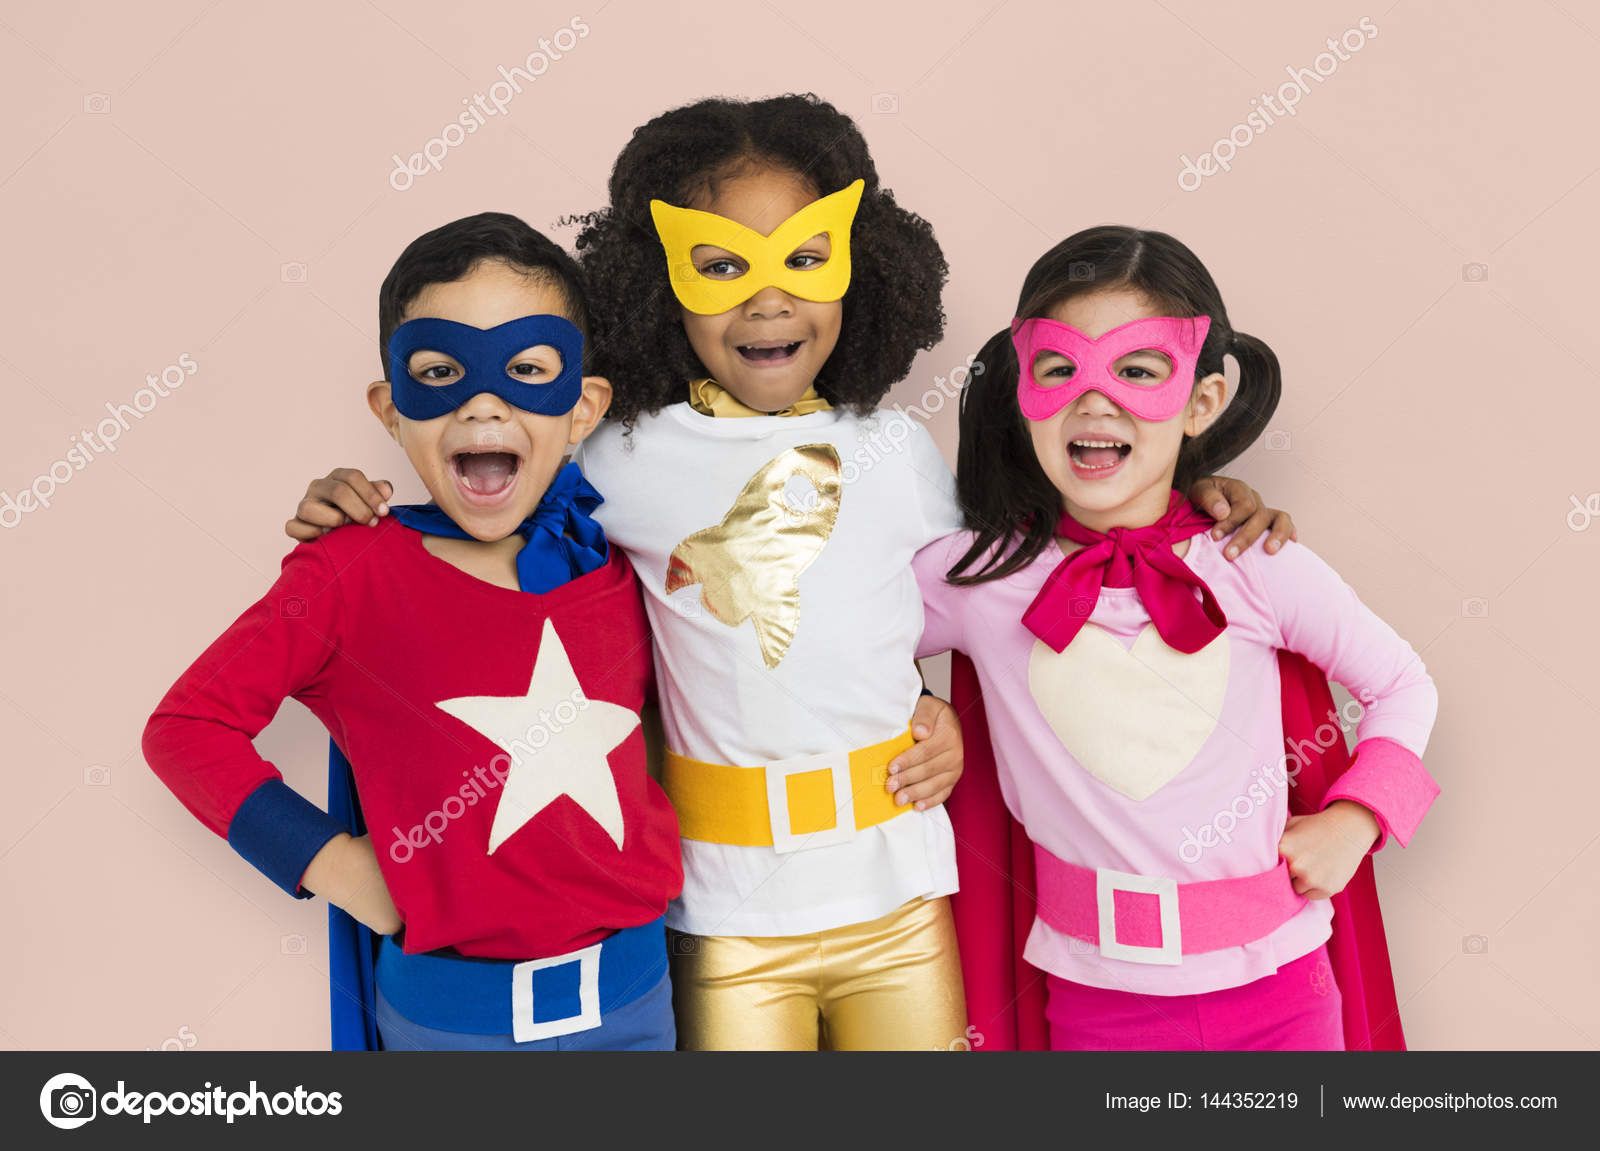 Niños disfrazados de superhéroes Ilustración de stock de ©Rawpixel